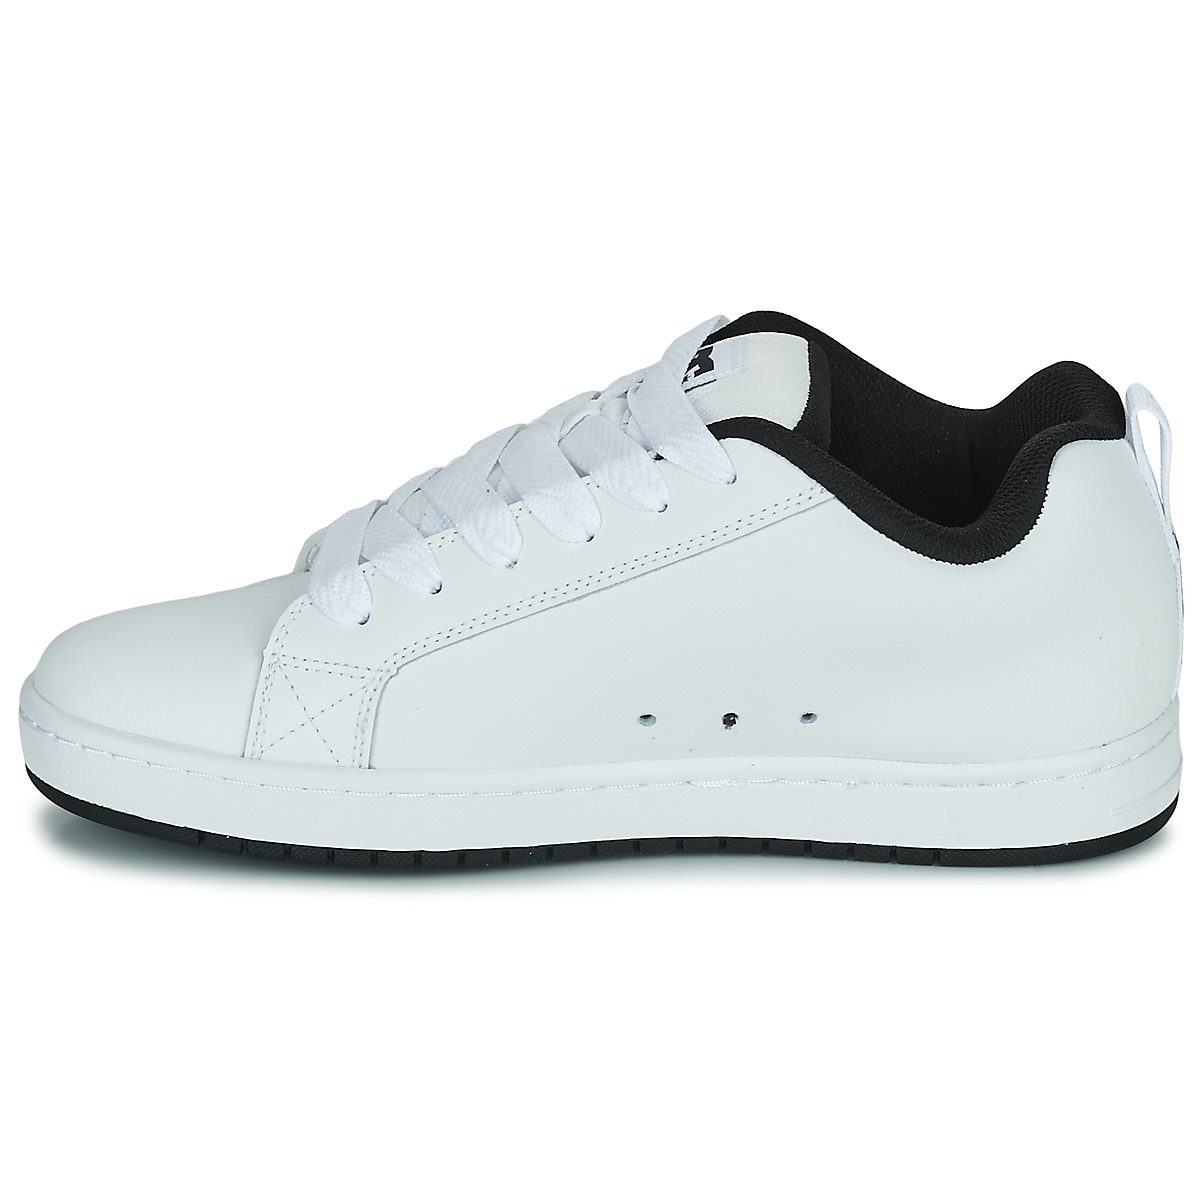 DC Shoes Blanc / Noir COURT GRAFFIK O6qwKx1s